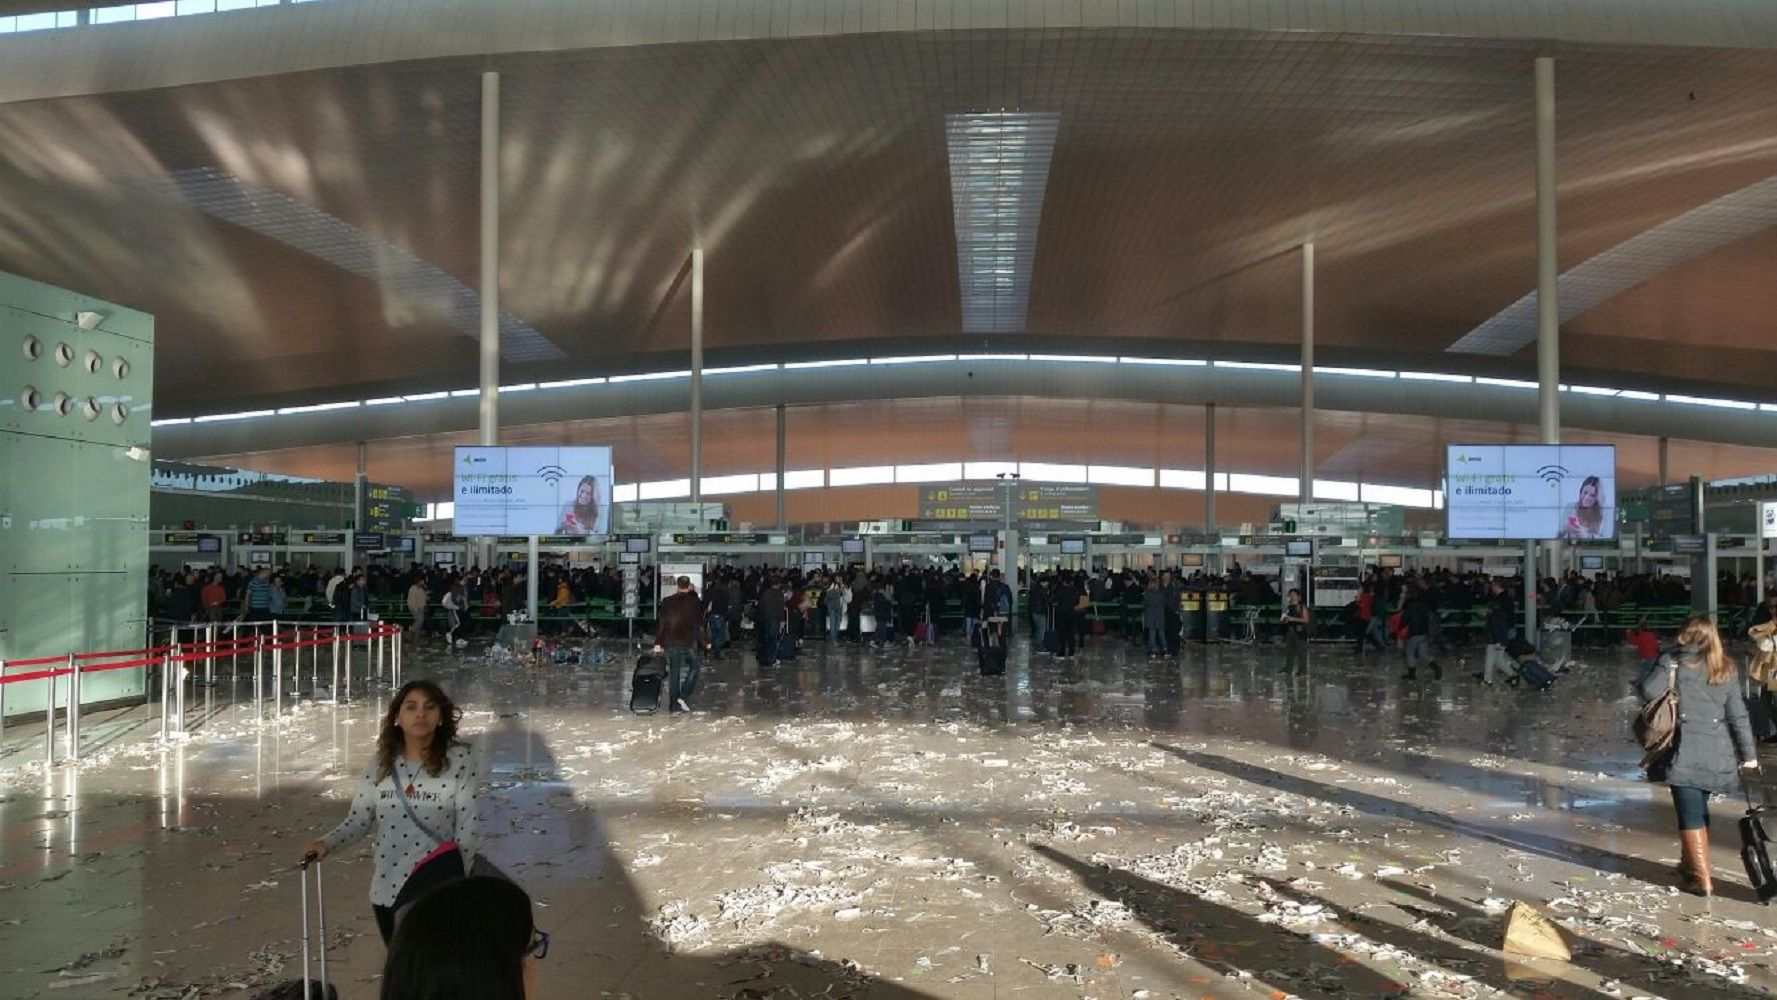 Galería: ¿El Prat, el aeropuerto más sucio del mundo?